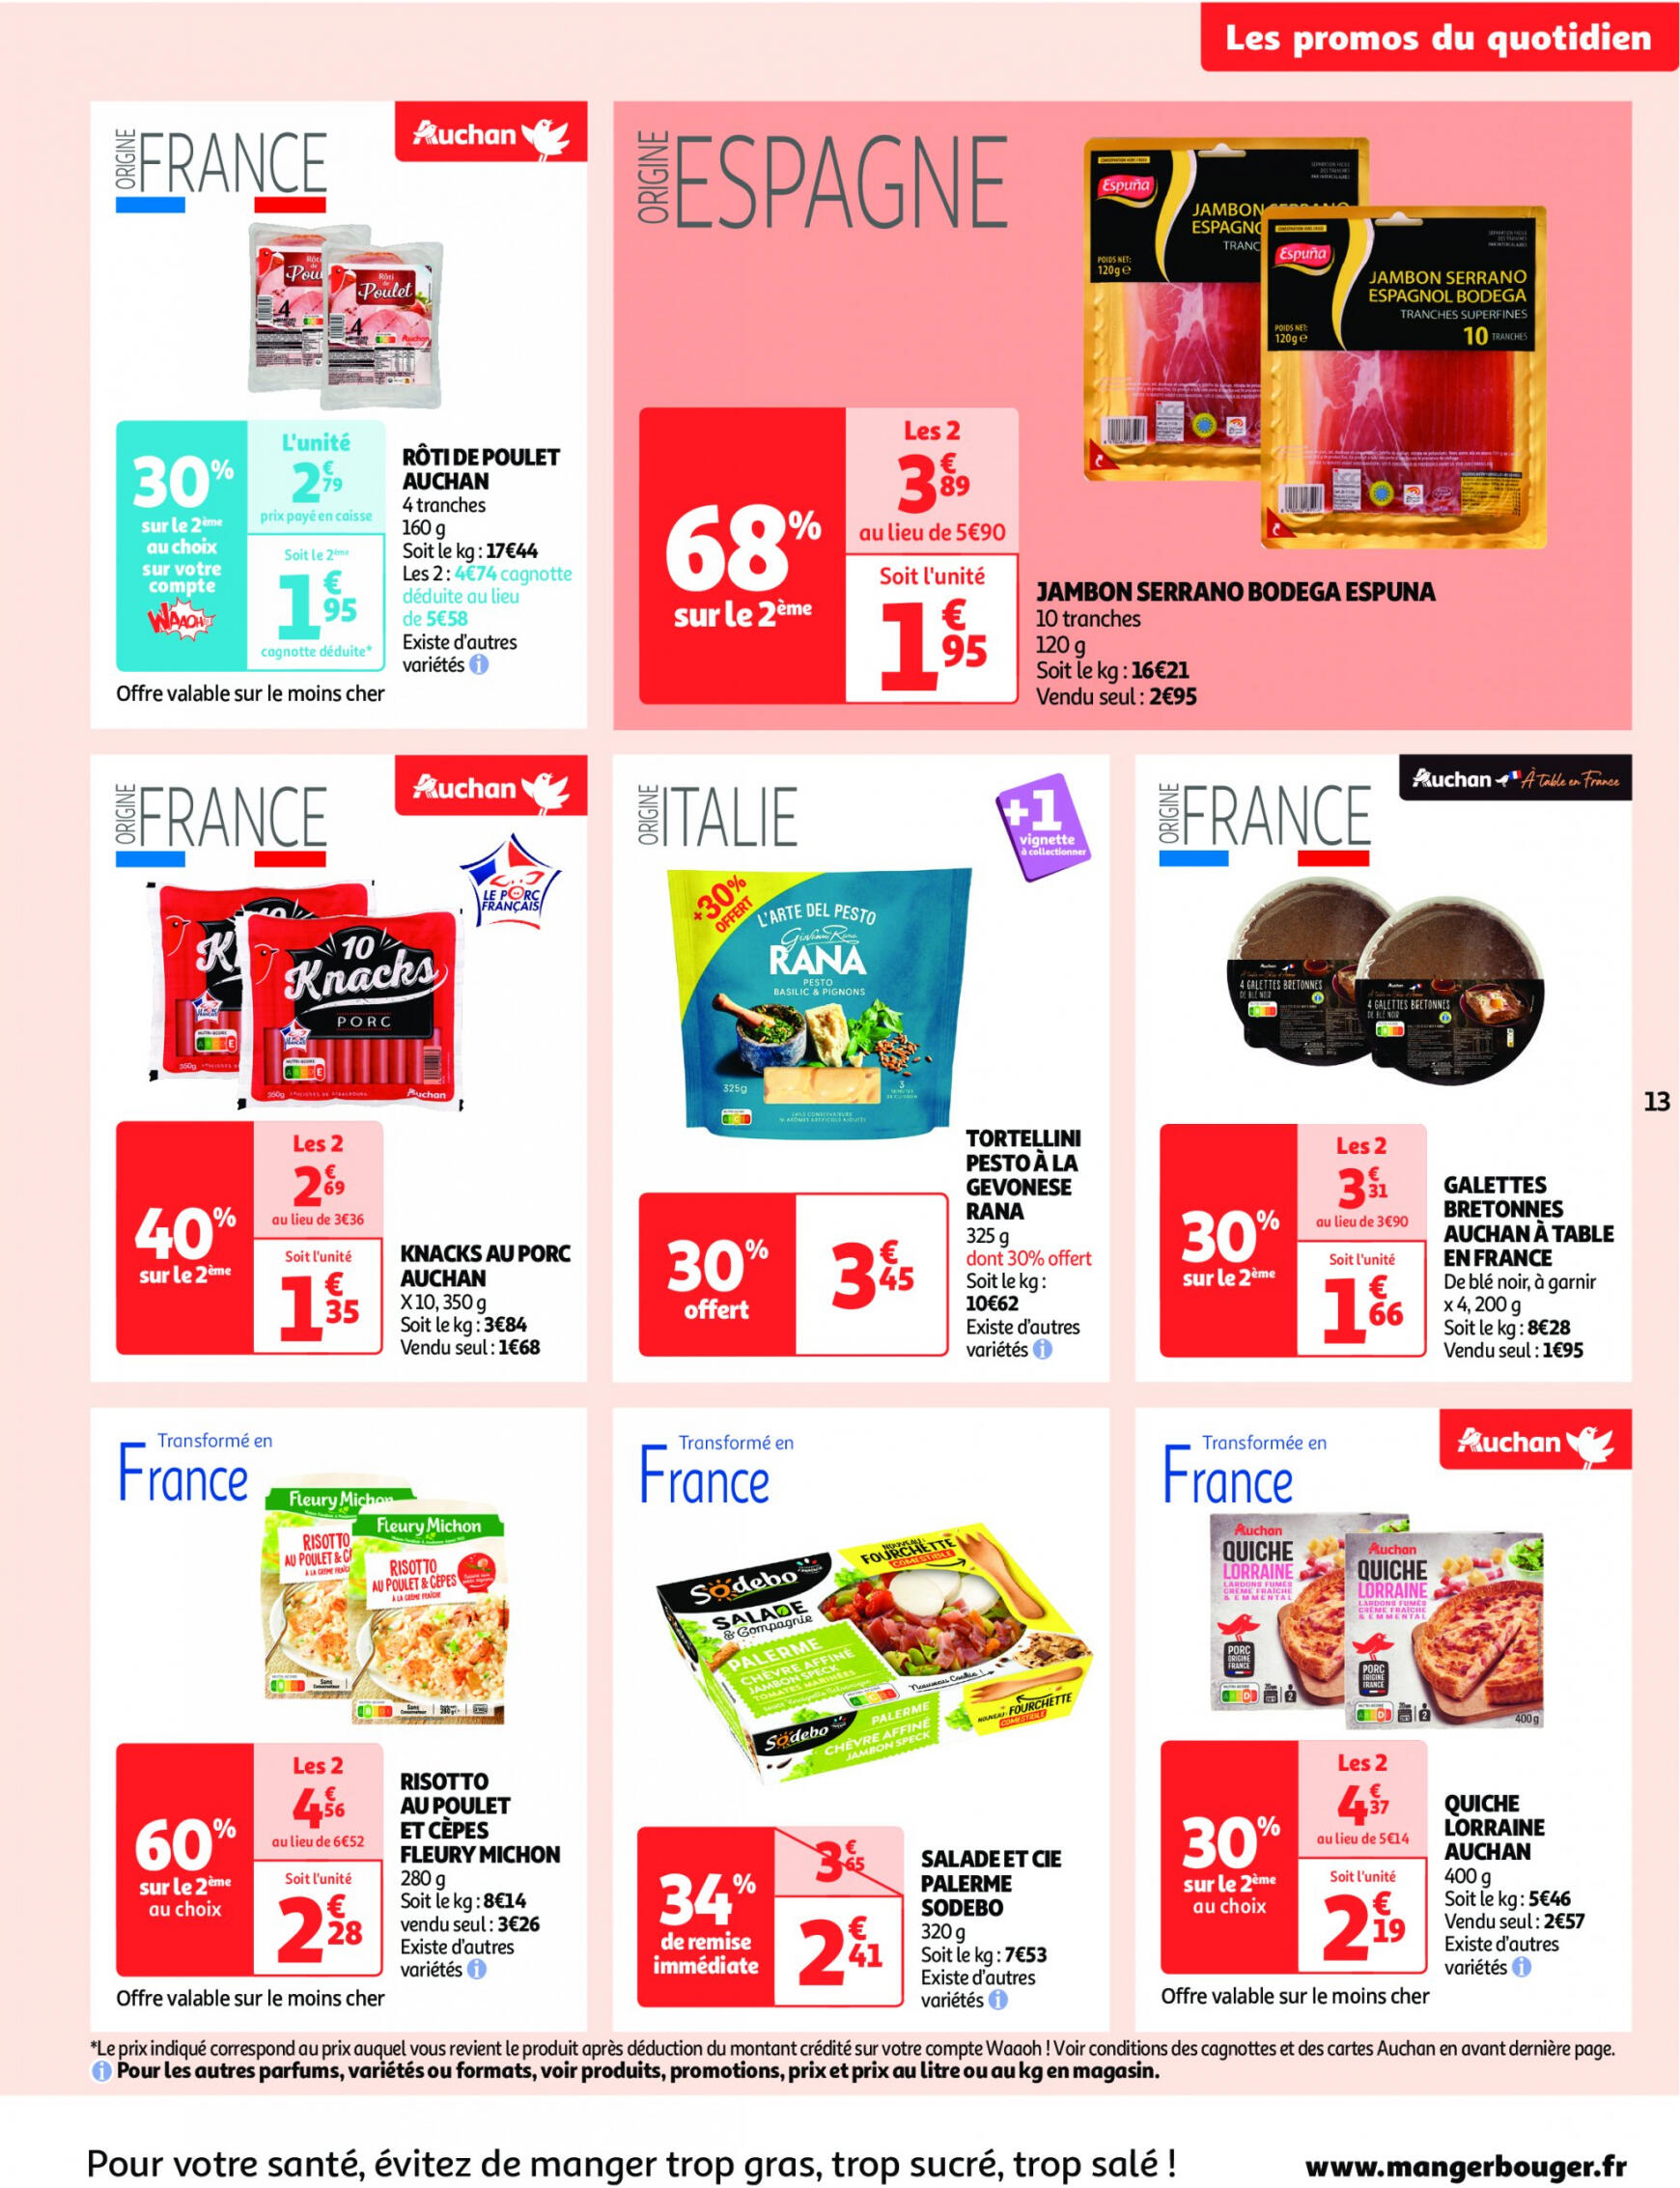 auchan - Auchan - On met le turbot sur les produits de la mer folder huidig 14.05. - 19.05. - page: 13